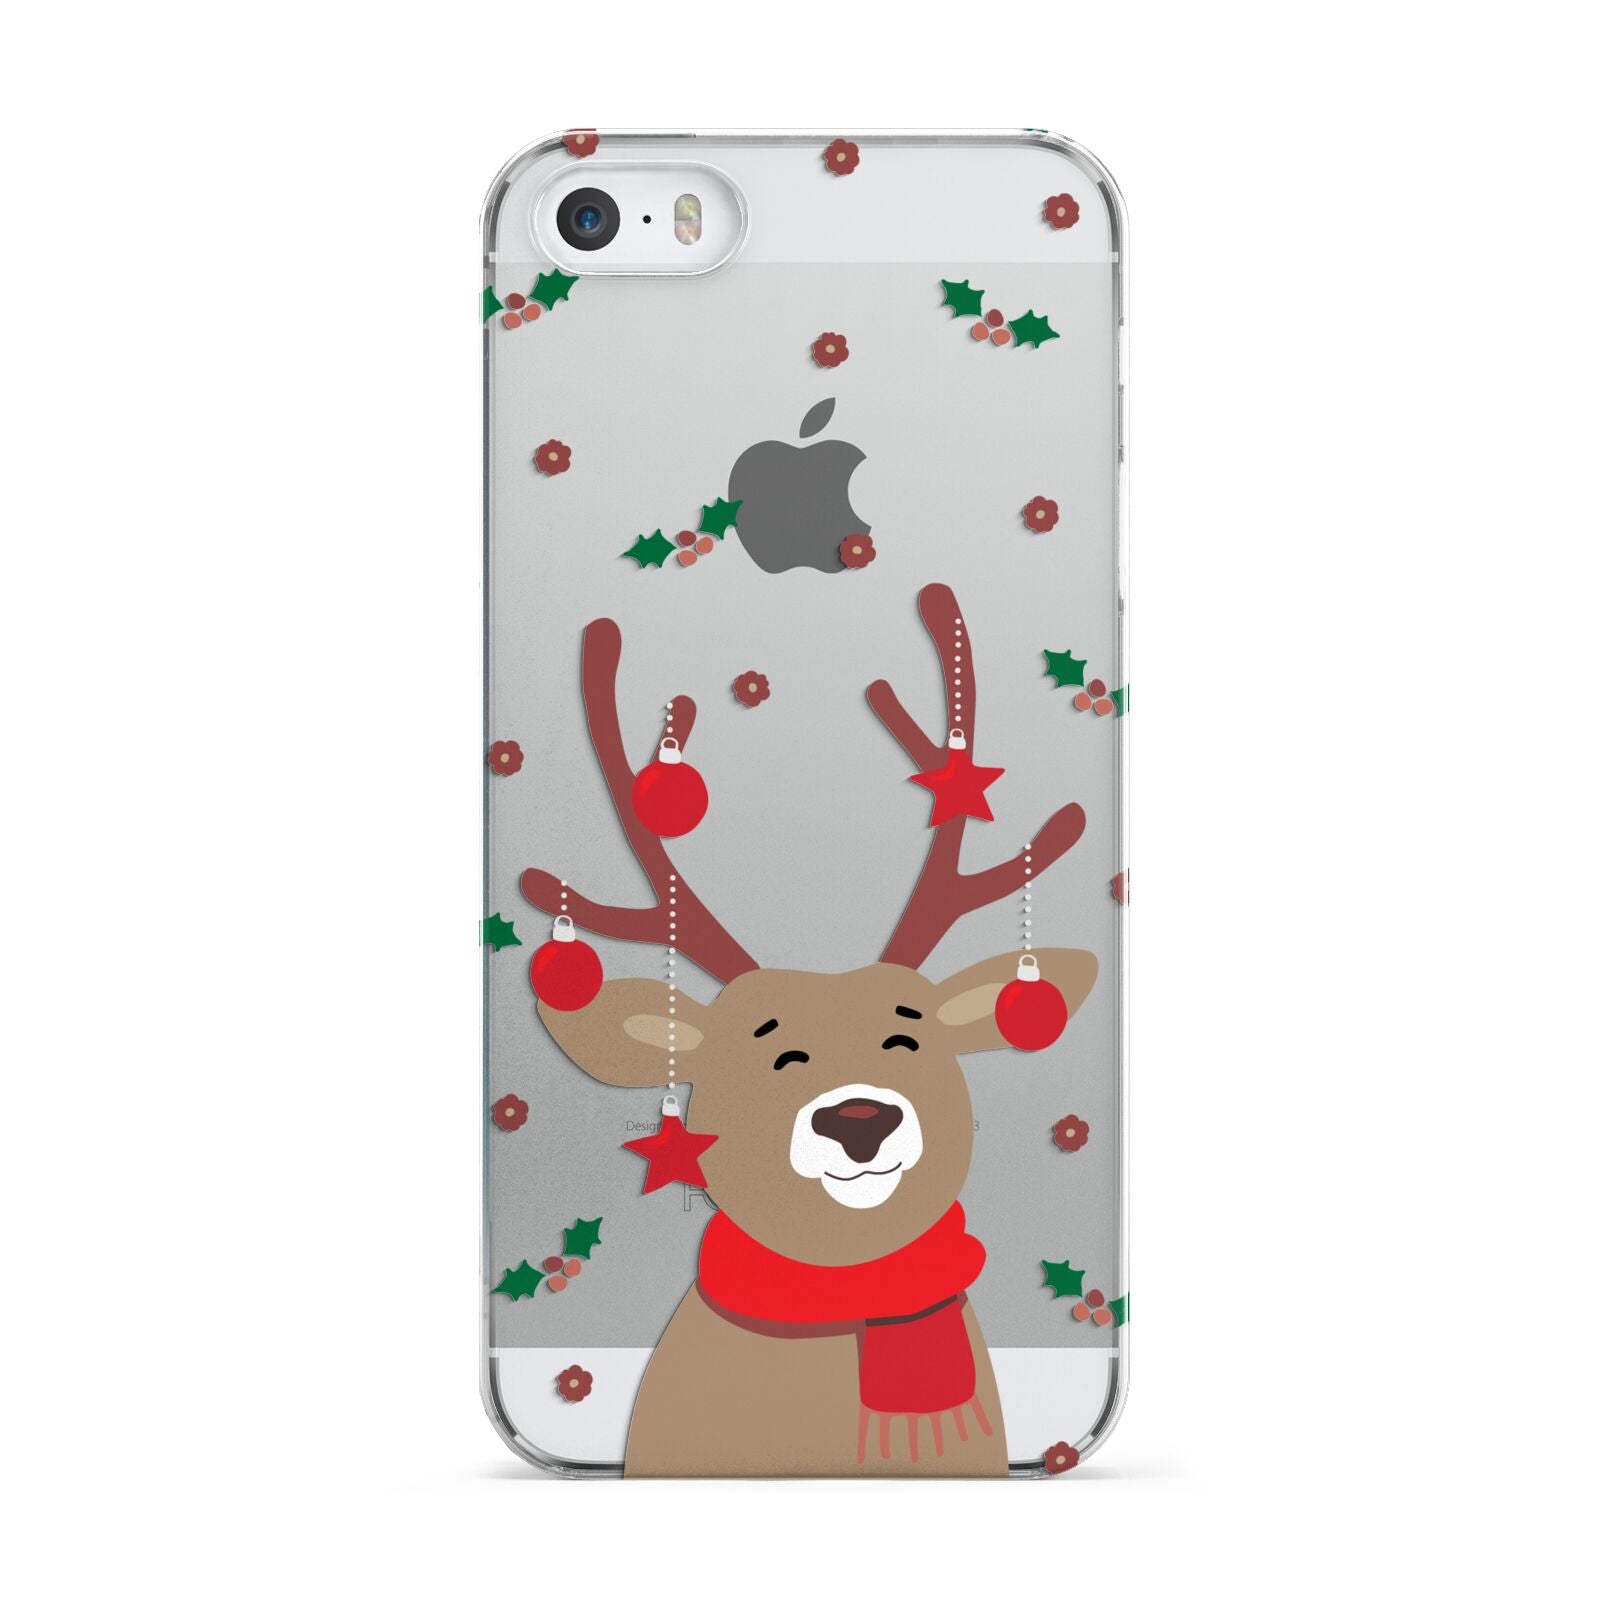 Reindeer Christmas Apple iPhone 5 Case